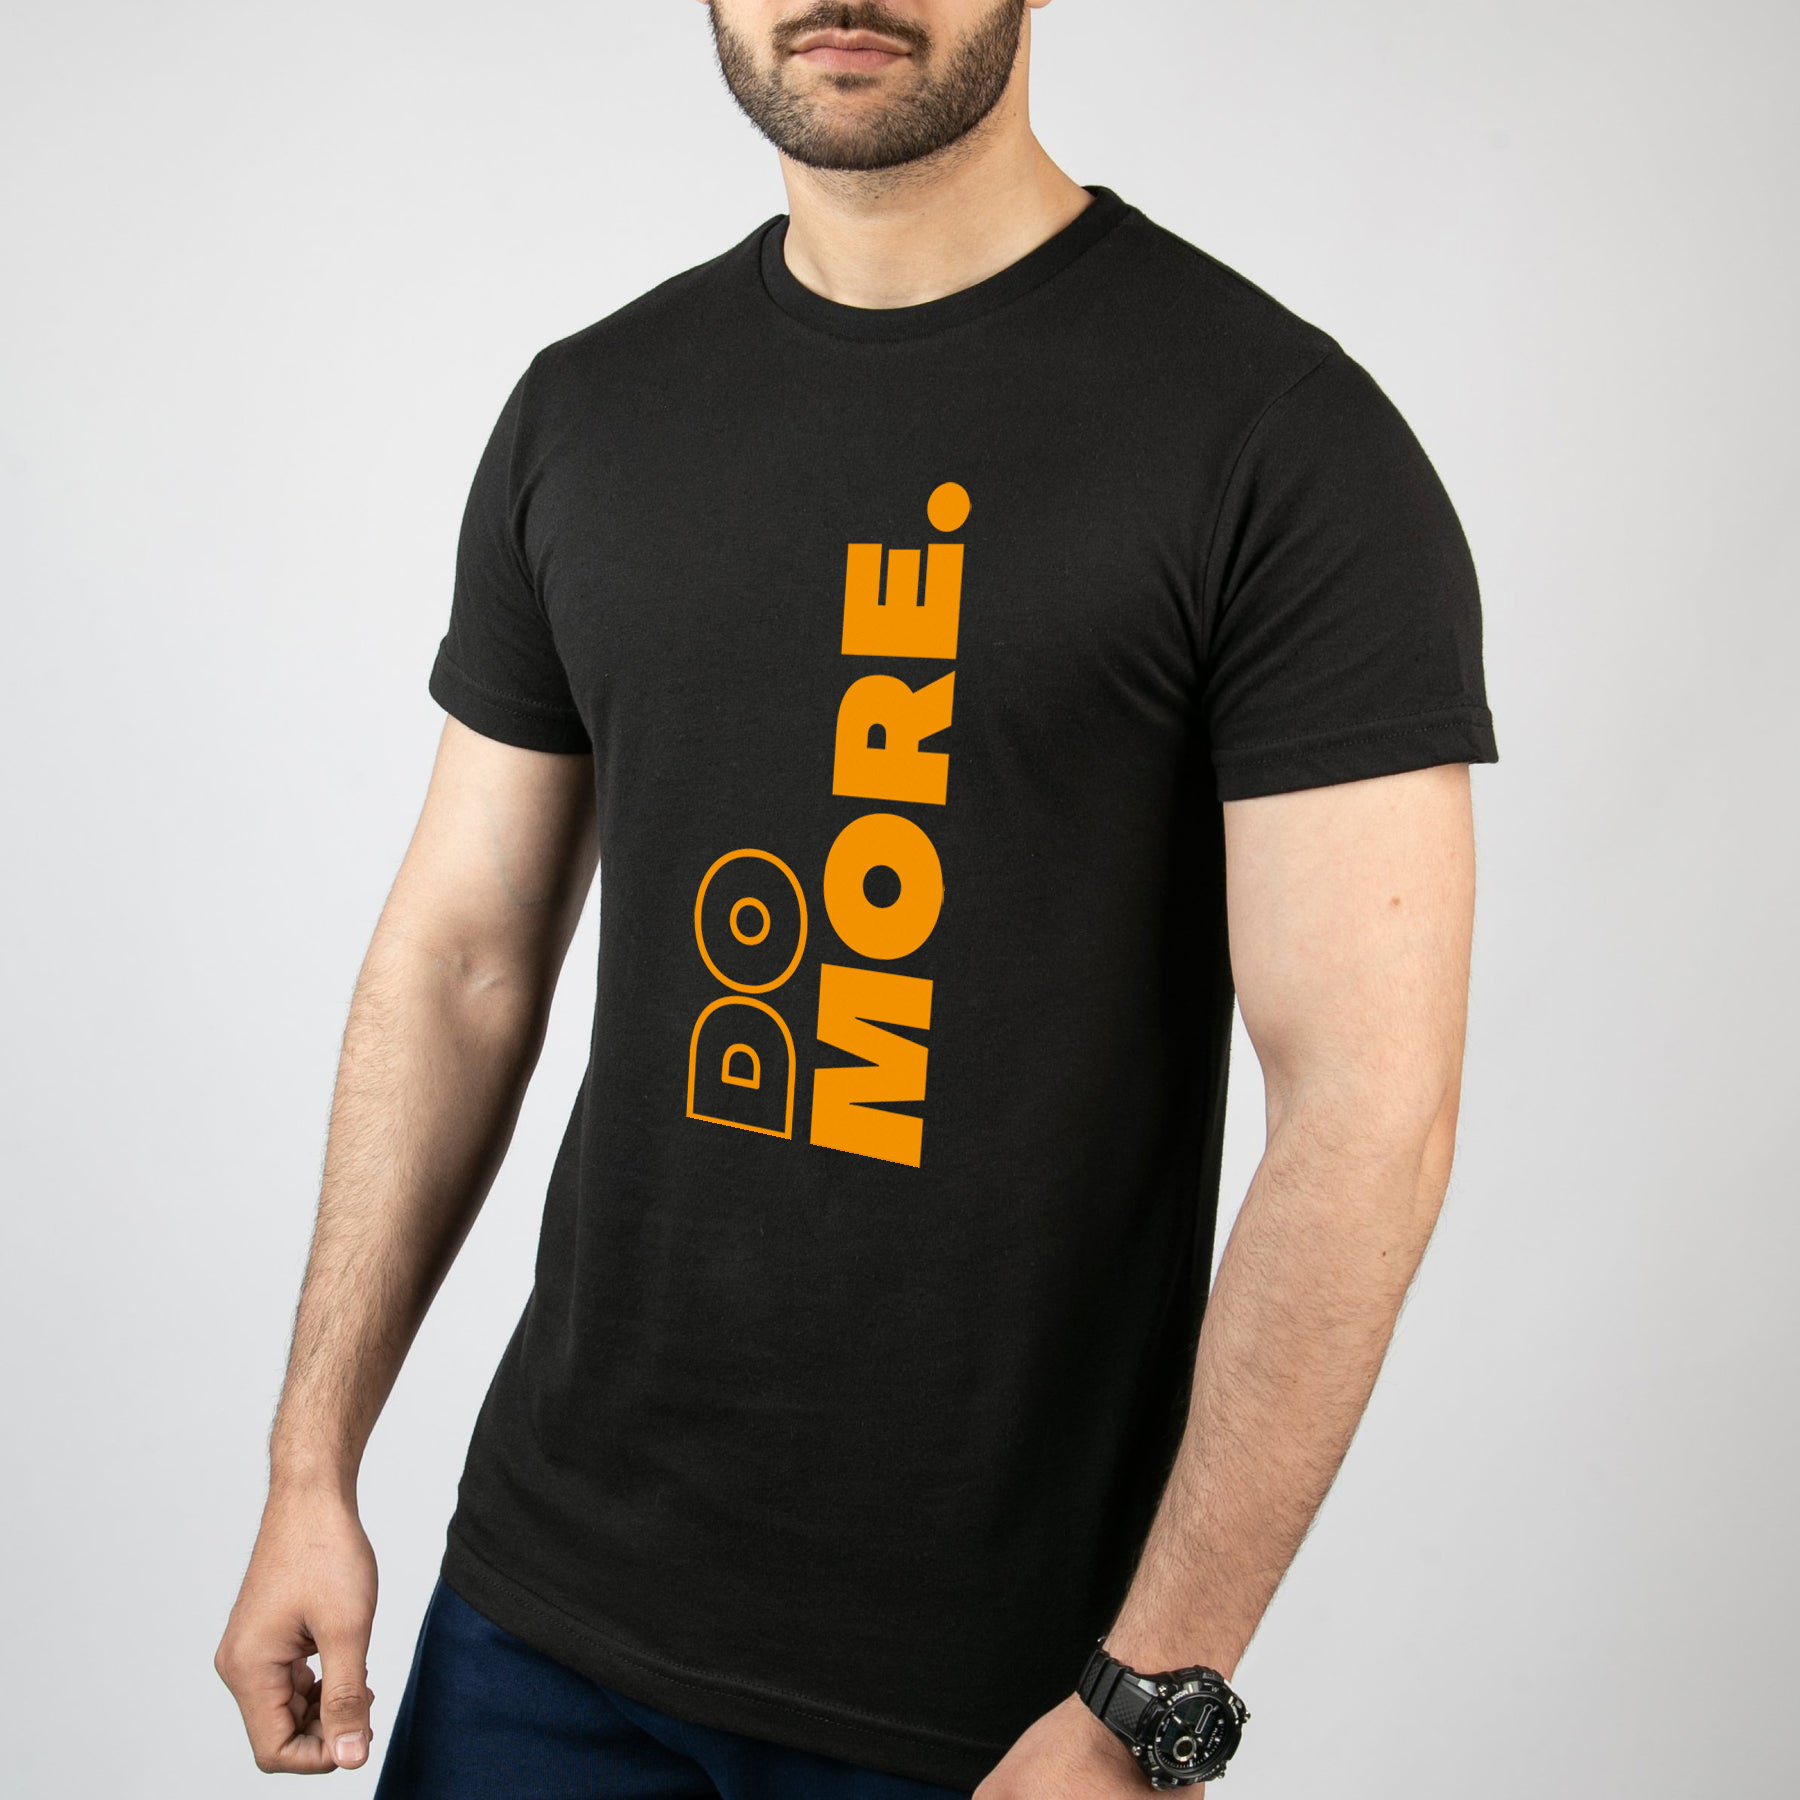 تی شرت آستین کوتاه مردانه مدل Do More کد T039